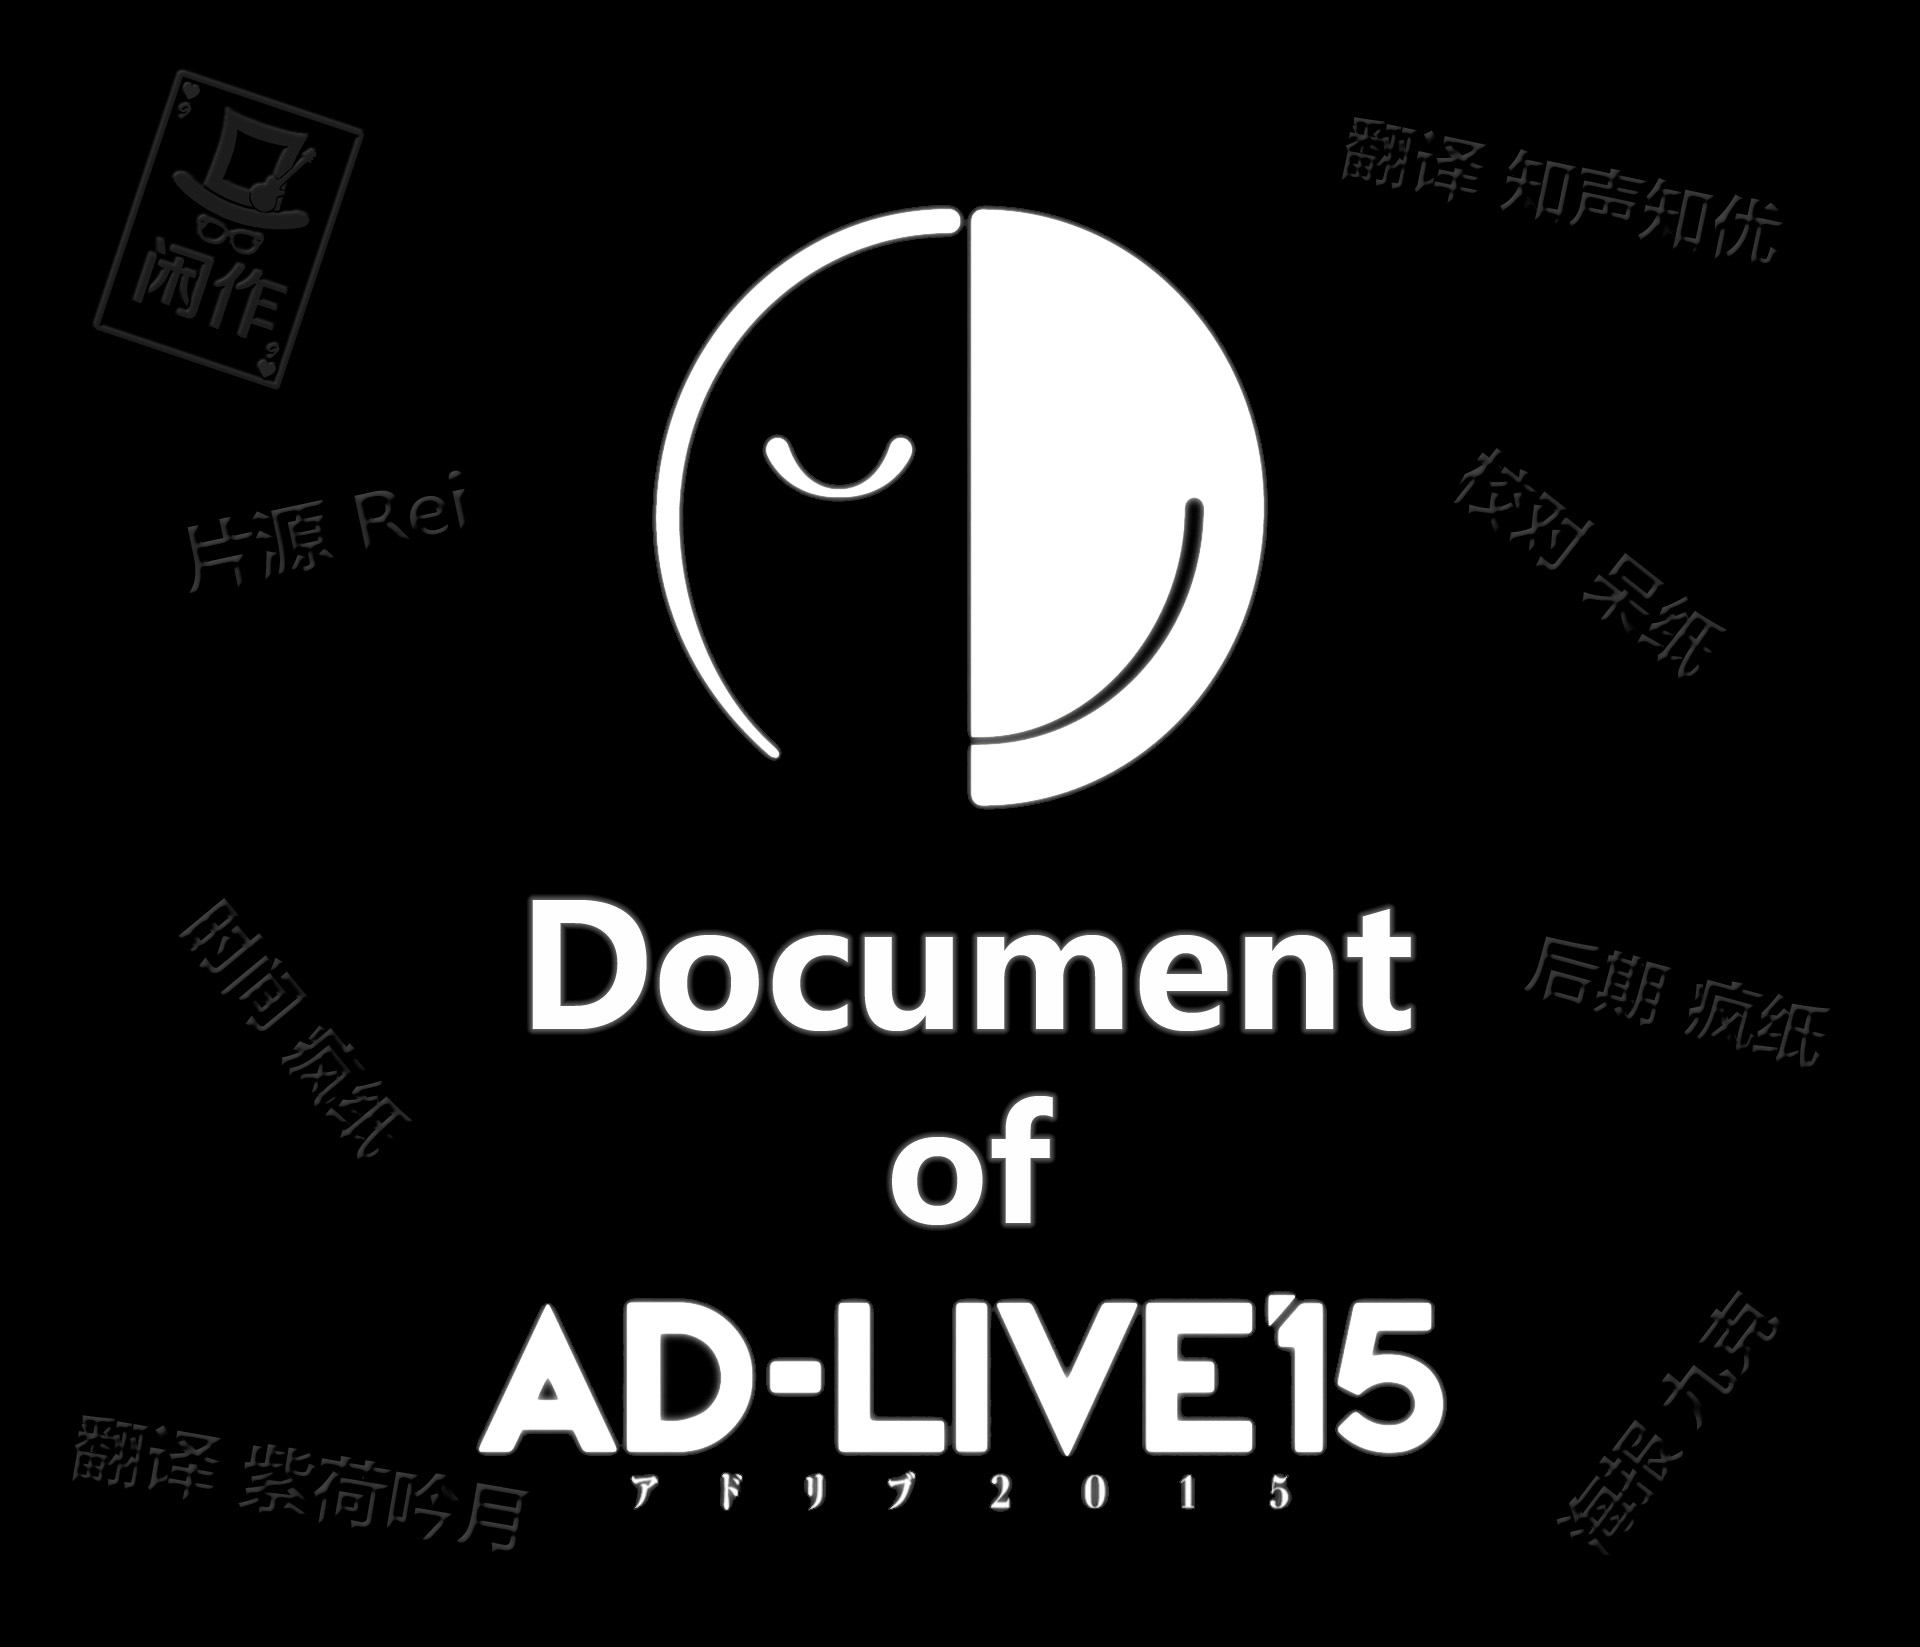 企划 字幕版 闲作出品 Document Of Ad Live 15 1080p 鈴村健一等 视频下载ダウンロードdownload 百度云网盘